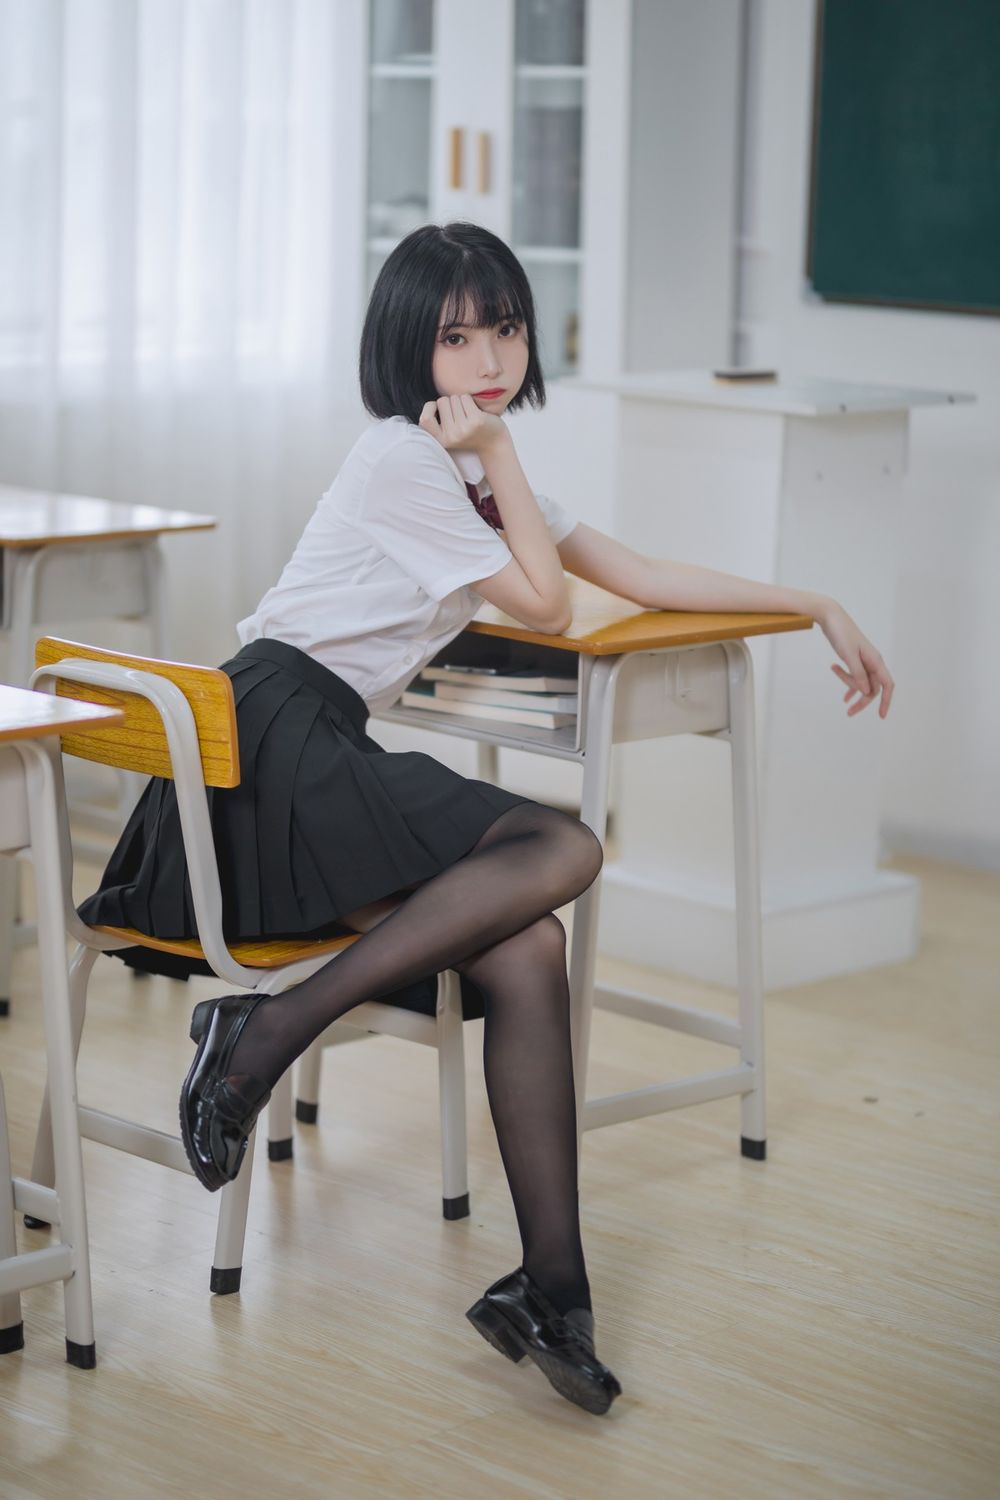 网络美女许岚LAN白衬衫配黑丝美腿JK制服教室场景性感写真